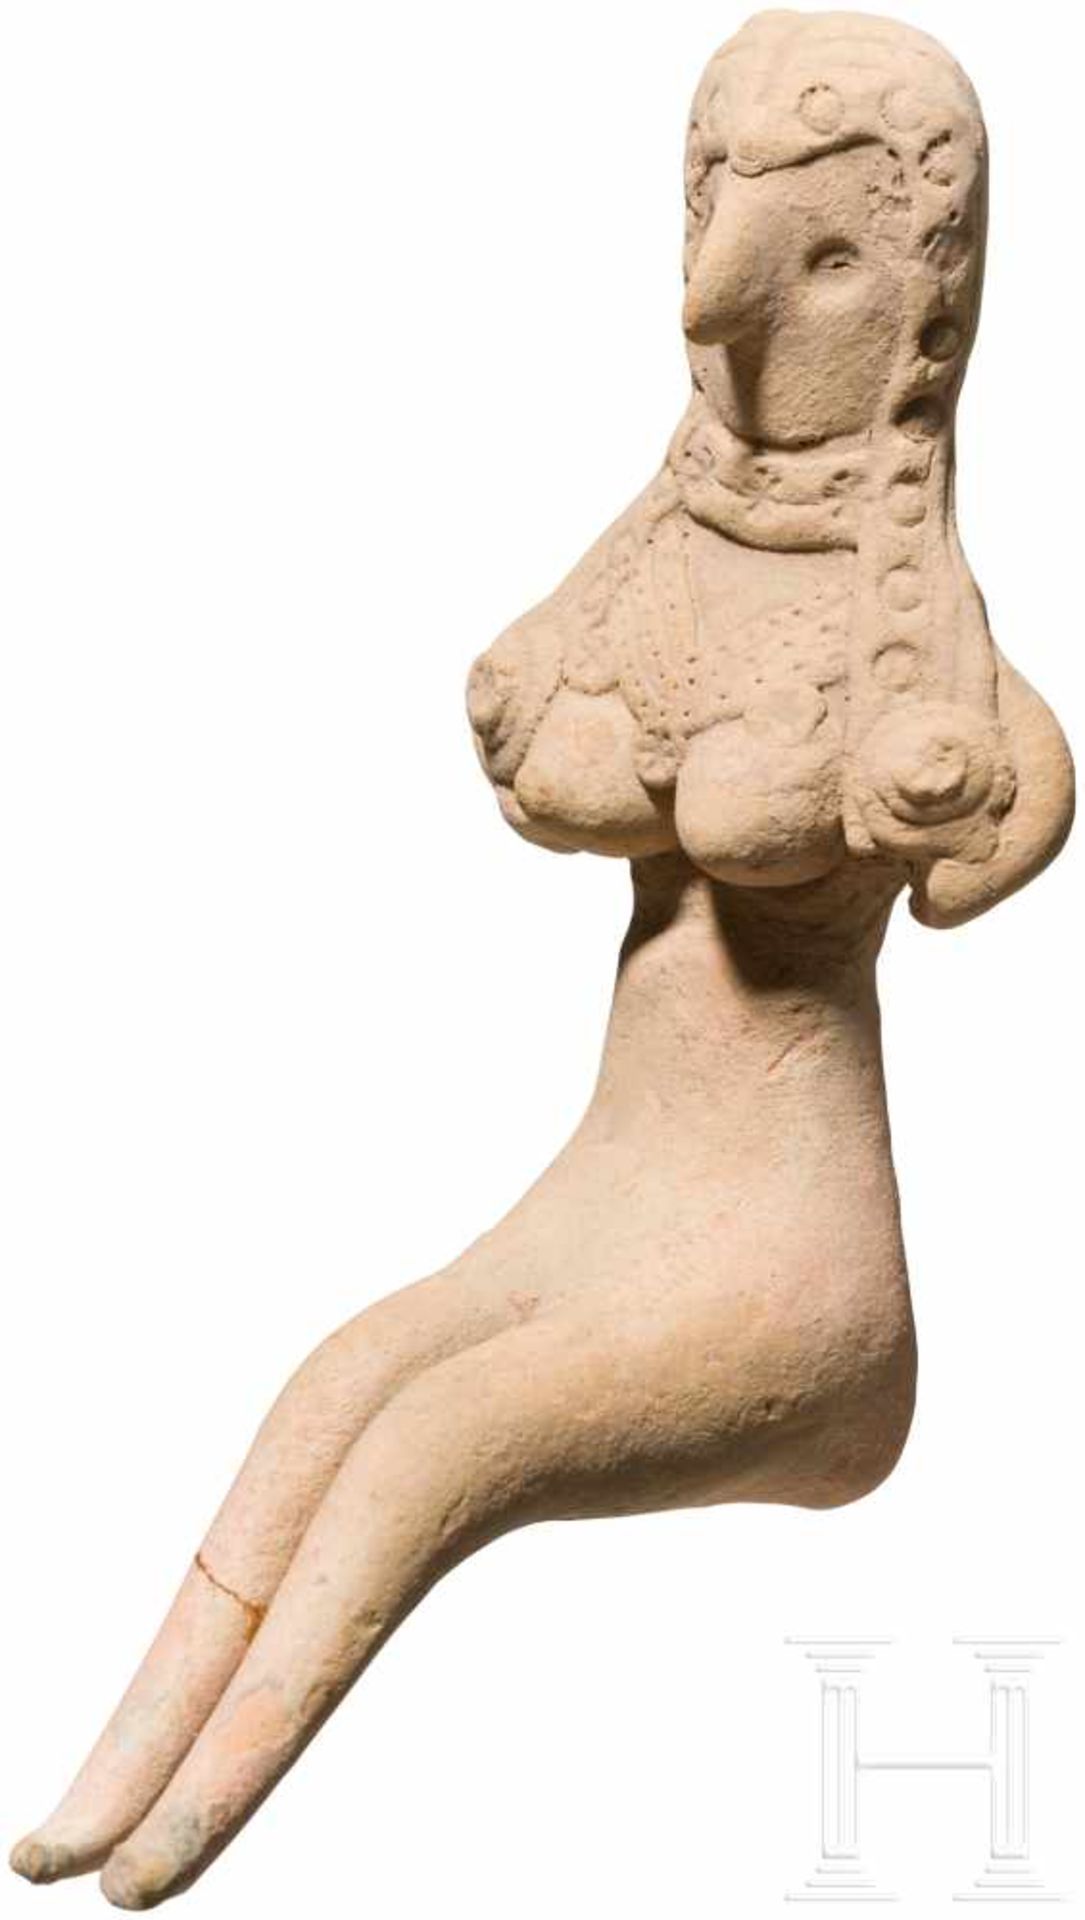 Weibliches Terrakotta-Idol, Indus Valley Civilization, Pakistan-Nordwestindien, 3. Jtsd. v. Chr. - Bild 2 aus 3